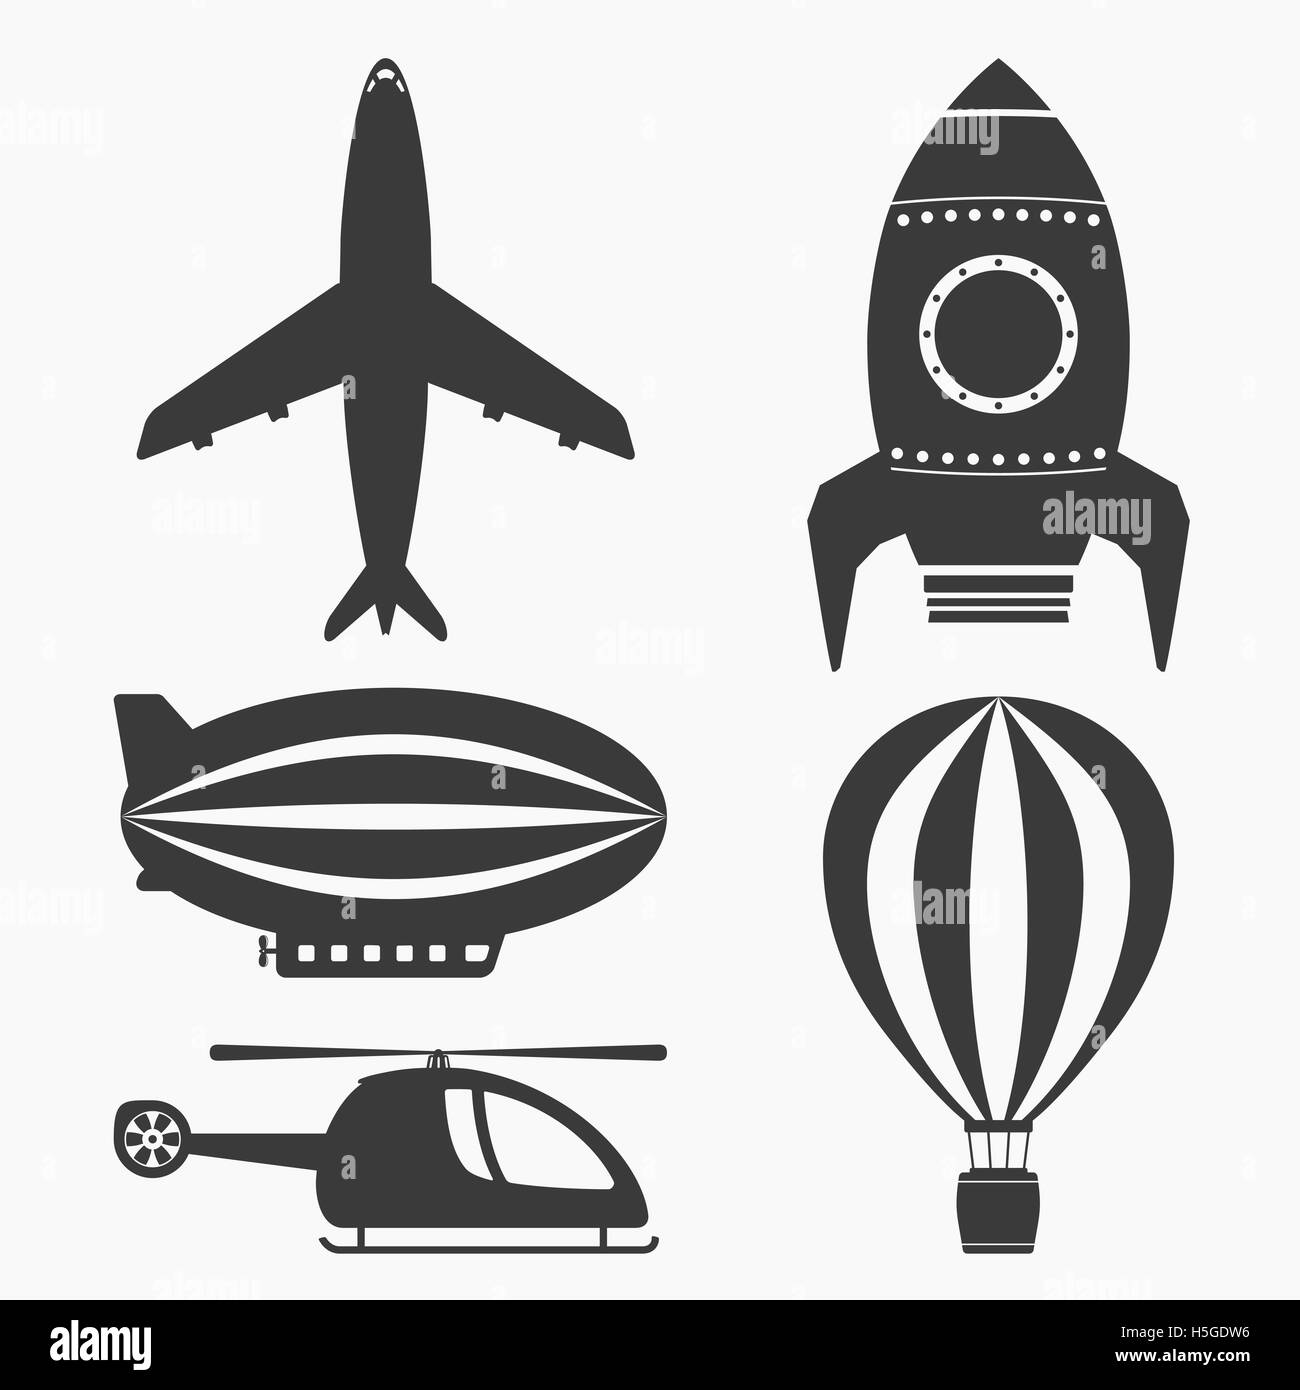 Trasporto aereo set di icone, elicottero, aereo, mongolfiera, dirigibile e rucola Foto Stock